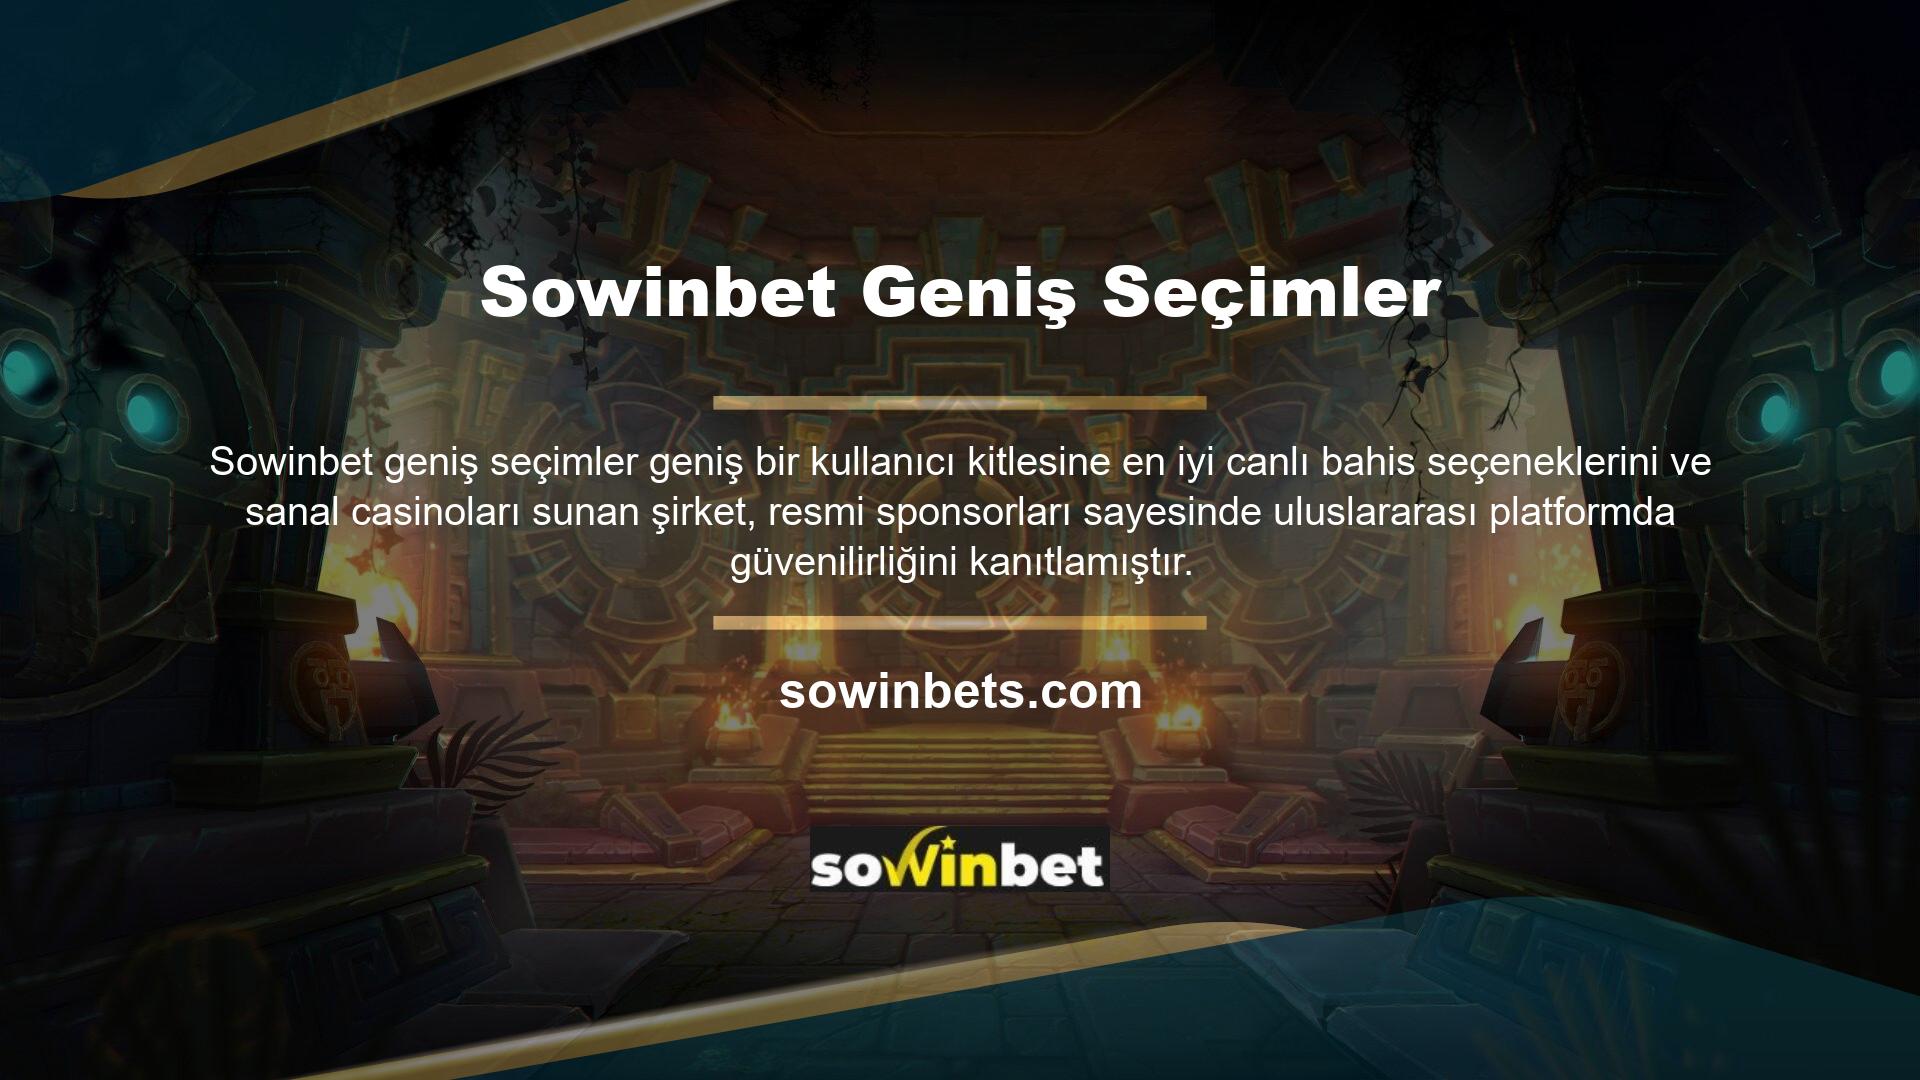 Sowinbet, online bahis ve casino alanında kullanıcıların beklentilerini karşılayarak her zaman cazip oranlar sunmayı başarmıştır